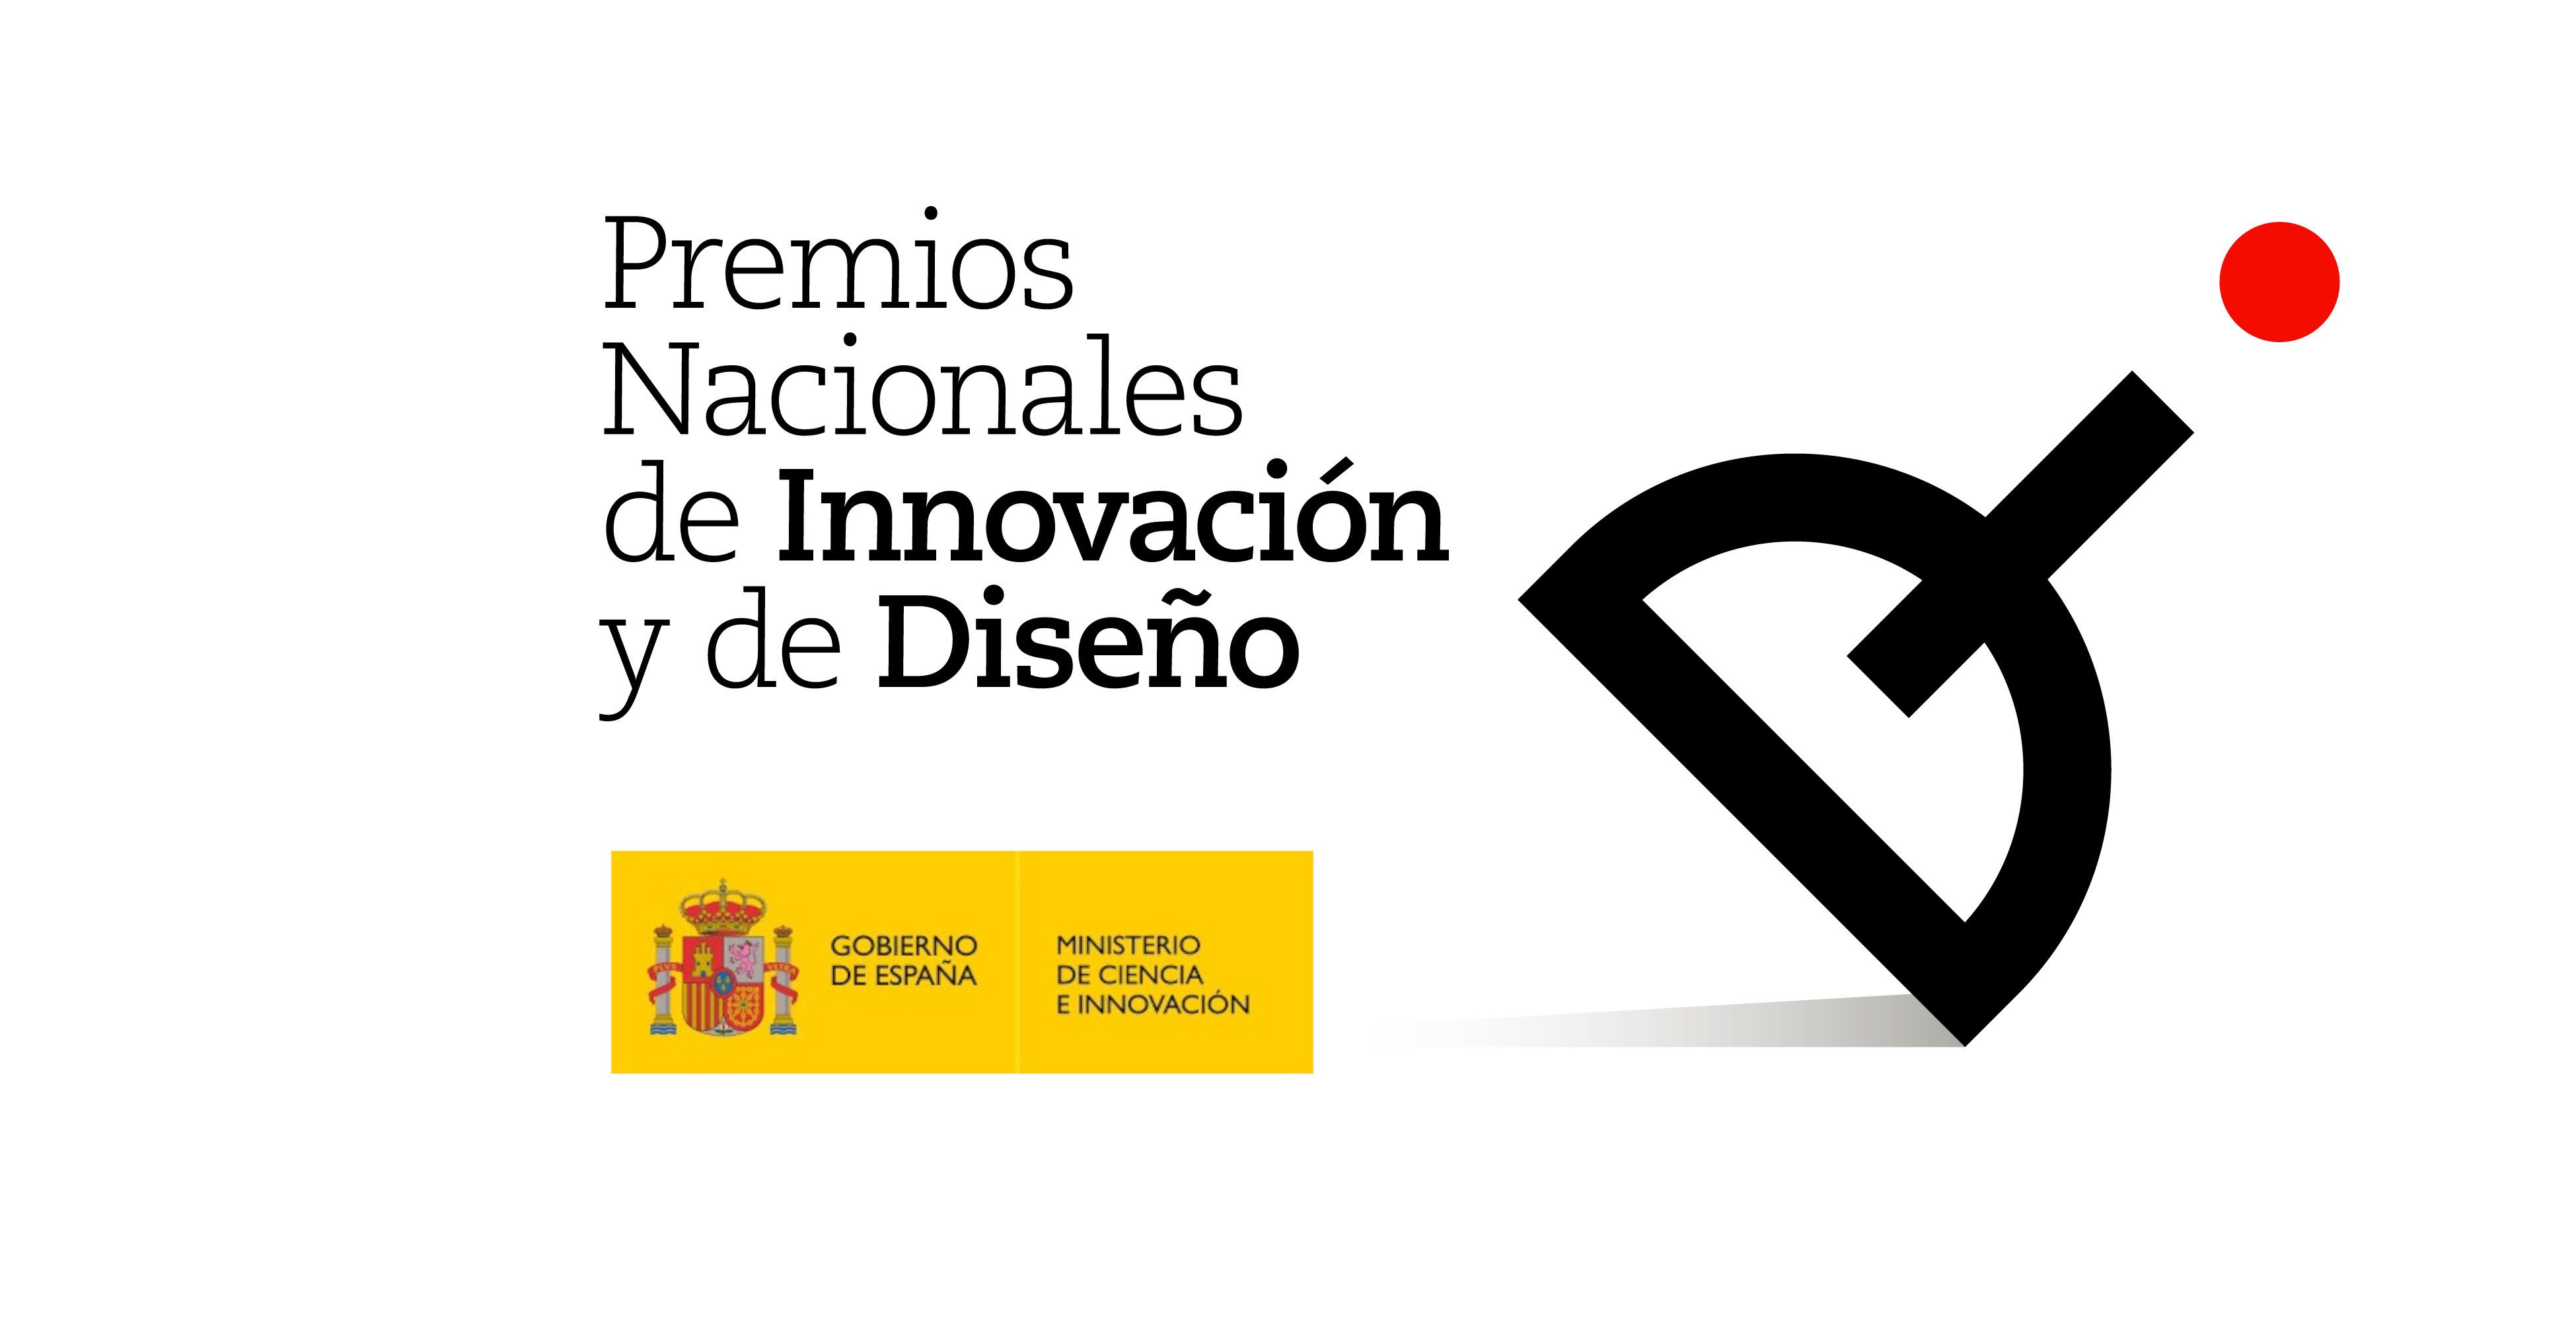  Premio Nacional de Innovación y de Diseño